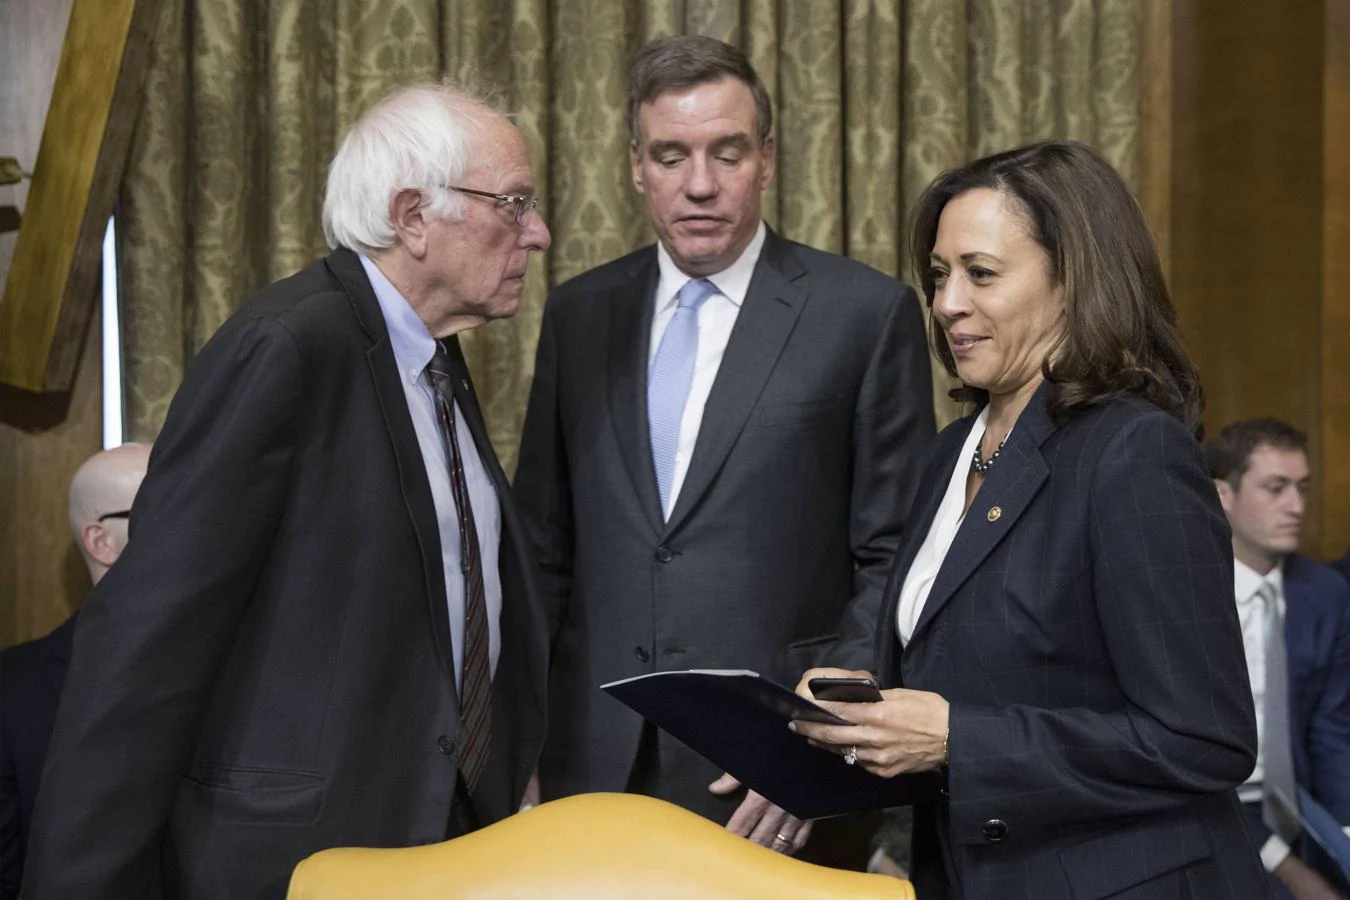 El senador Bernie Sanders, del ala izquierda del Partido Demócrata, compitió en las primarias de la formación frente a Kamala Harris